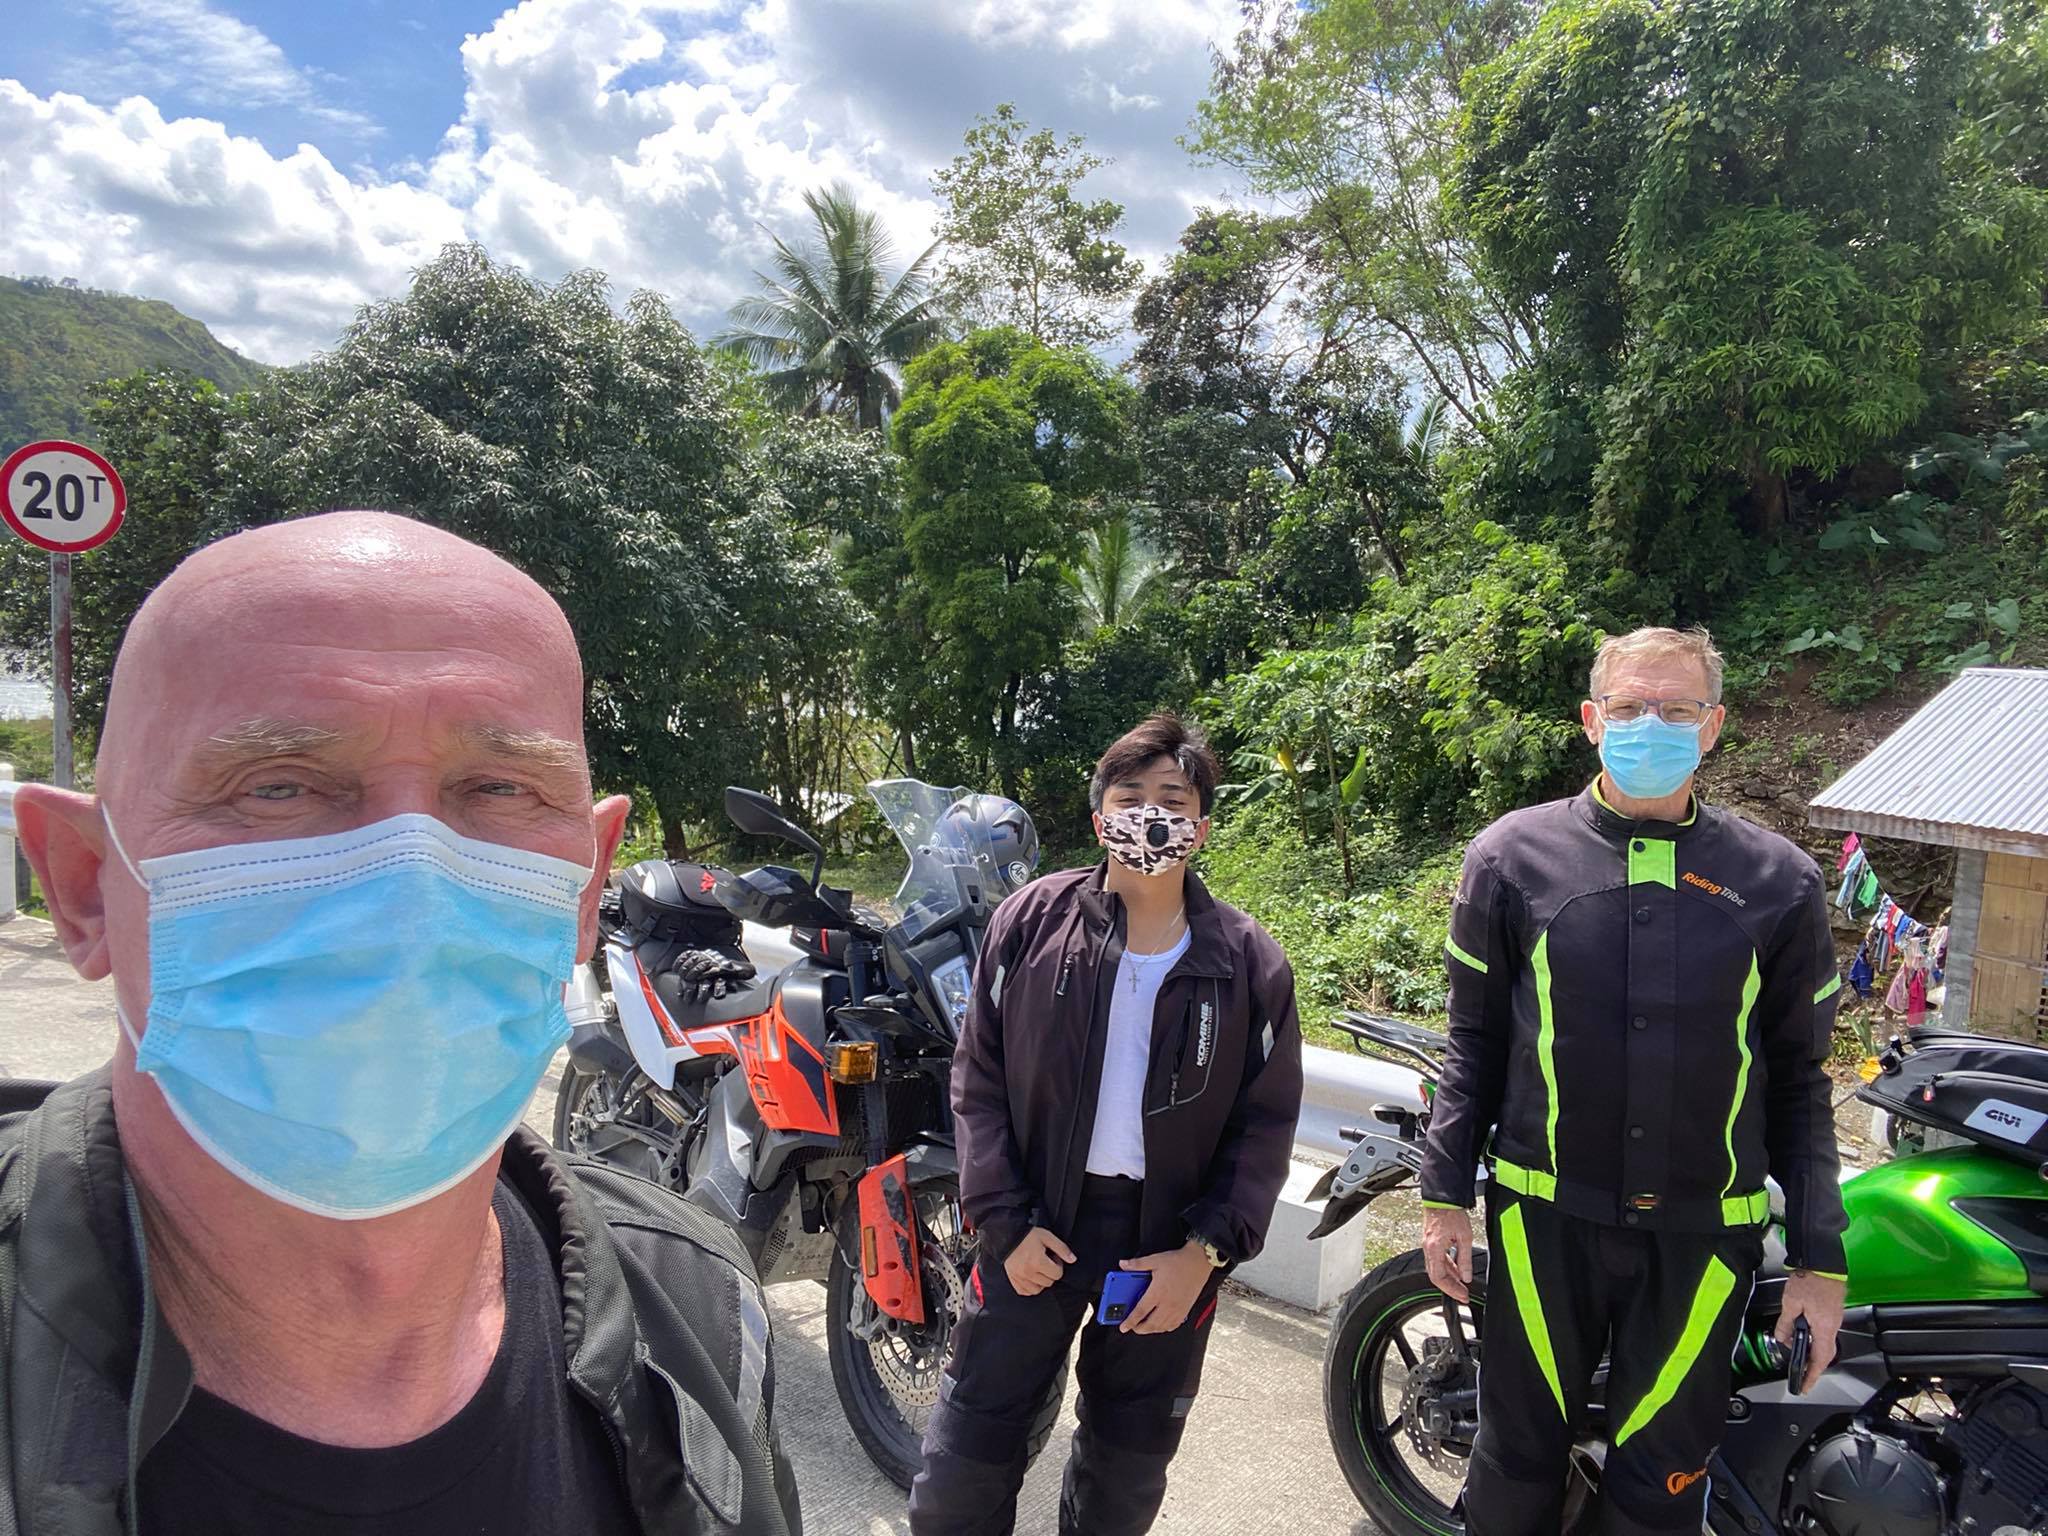 Riding around Mindoro